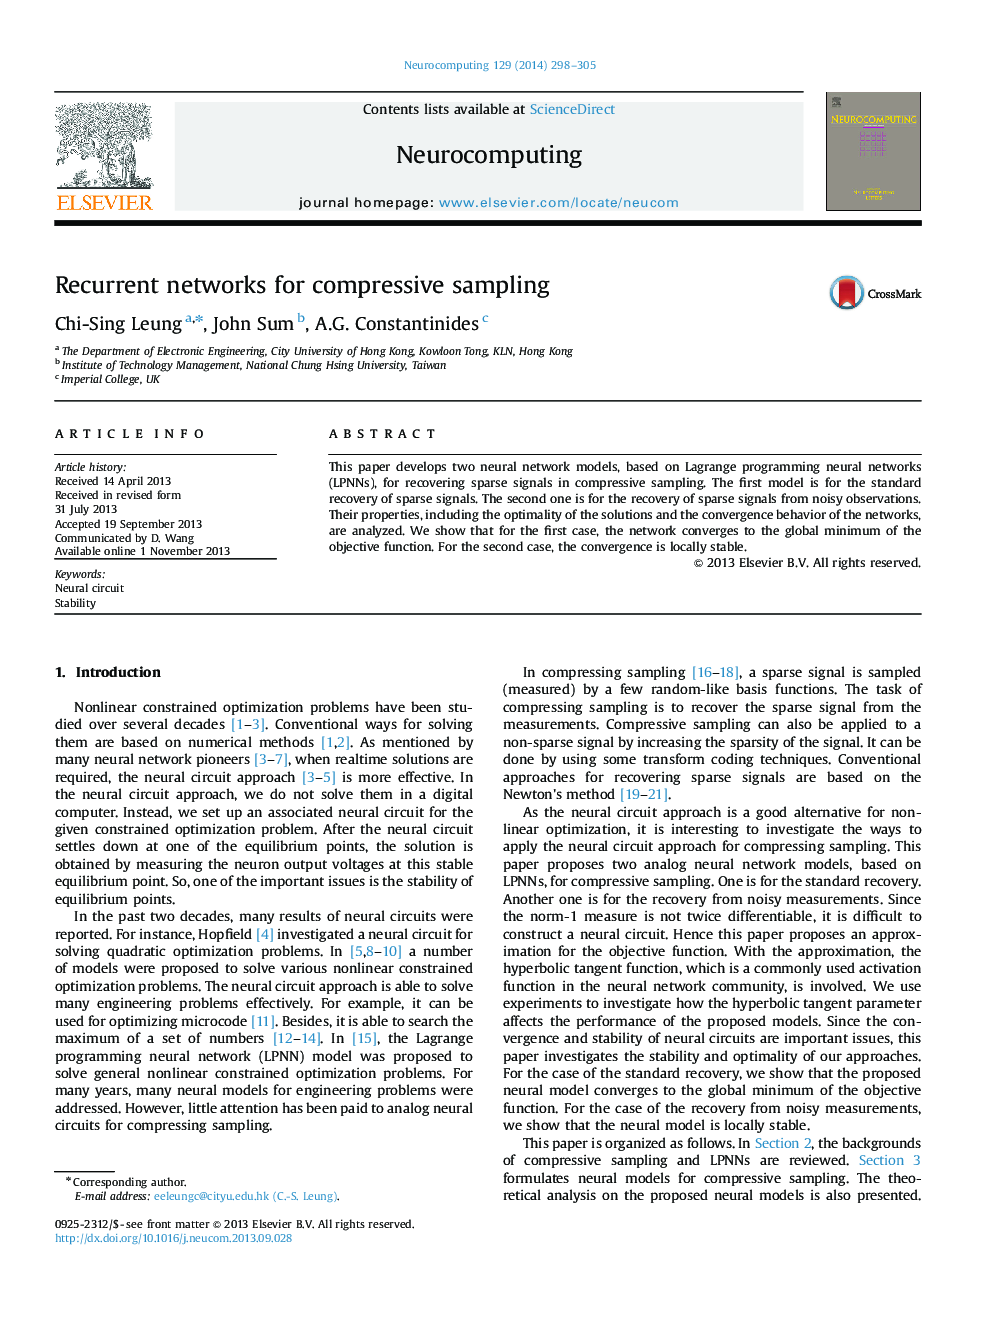 Recurrent networks for compressive sampling